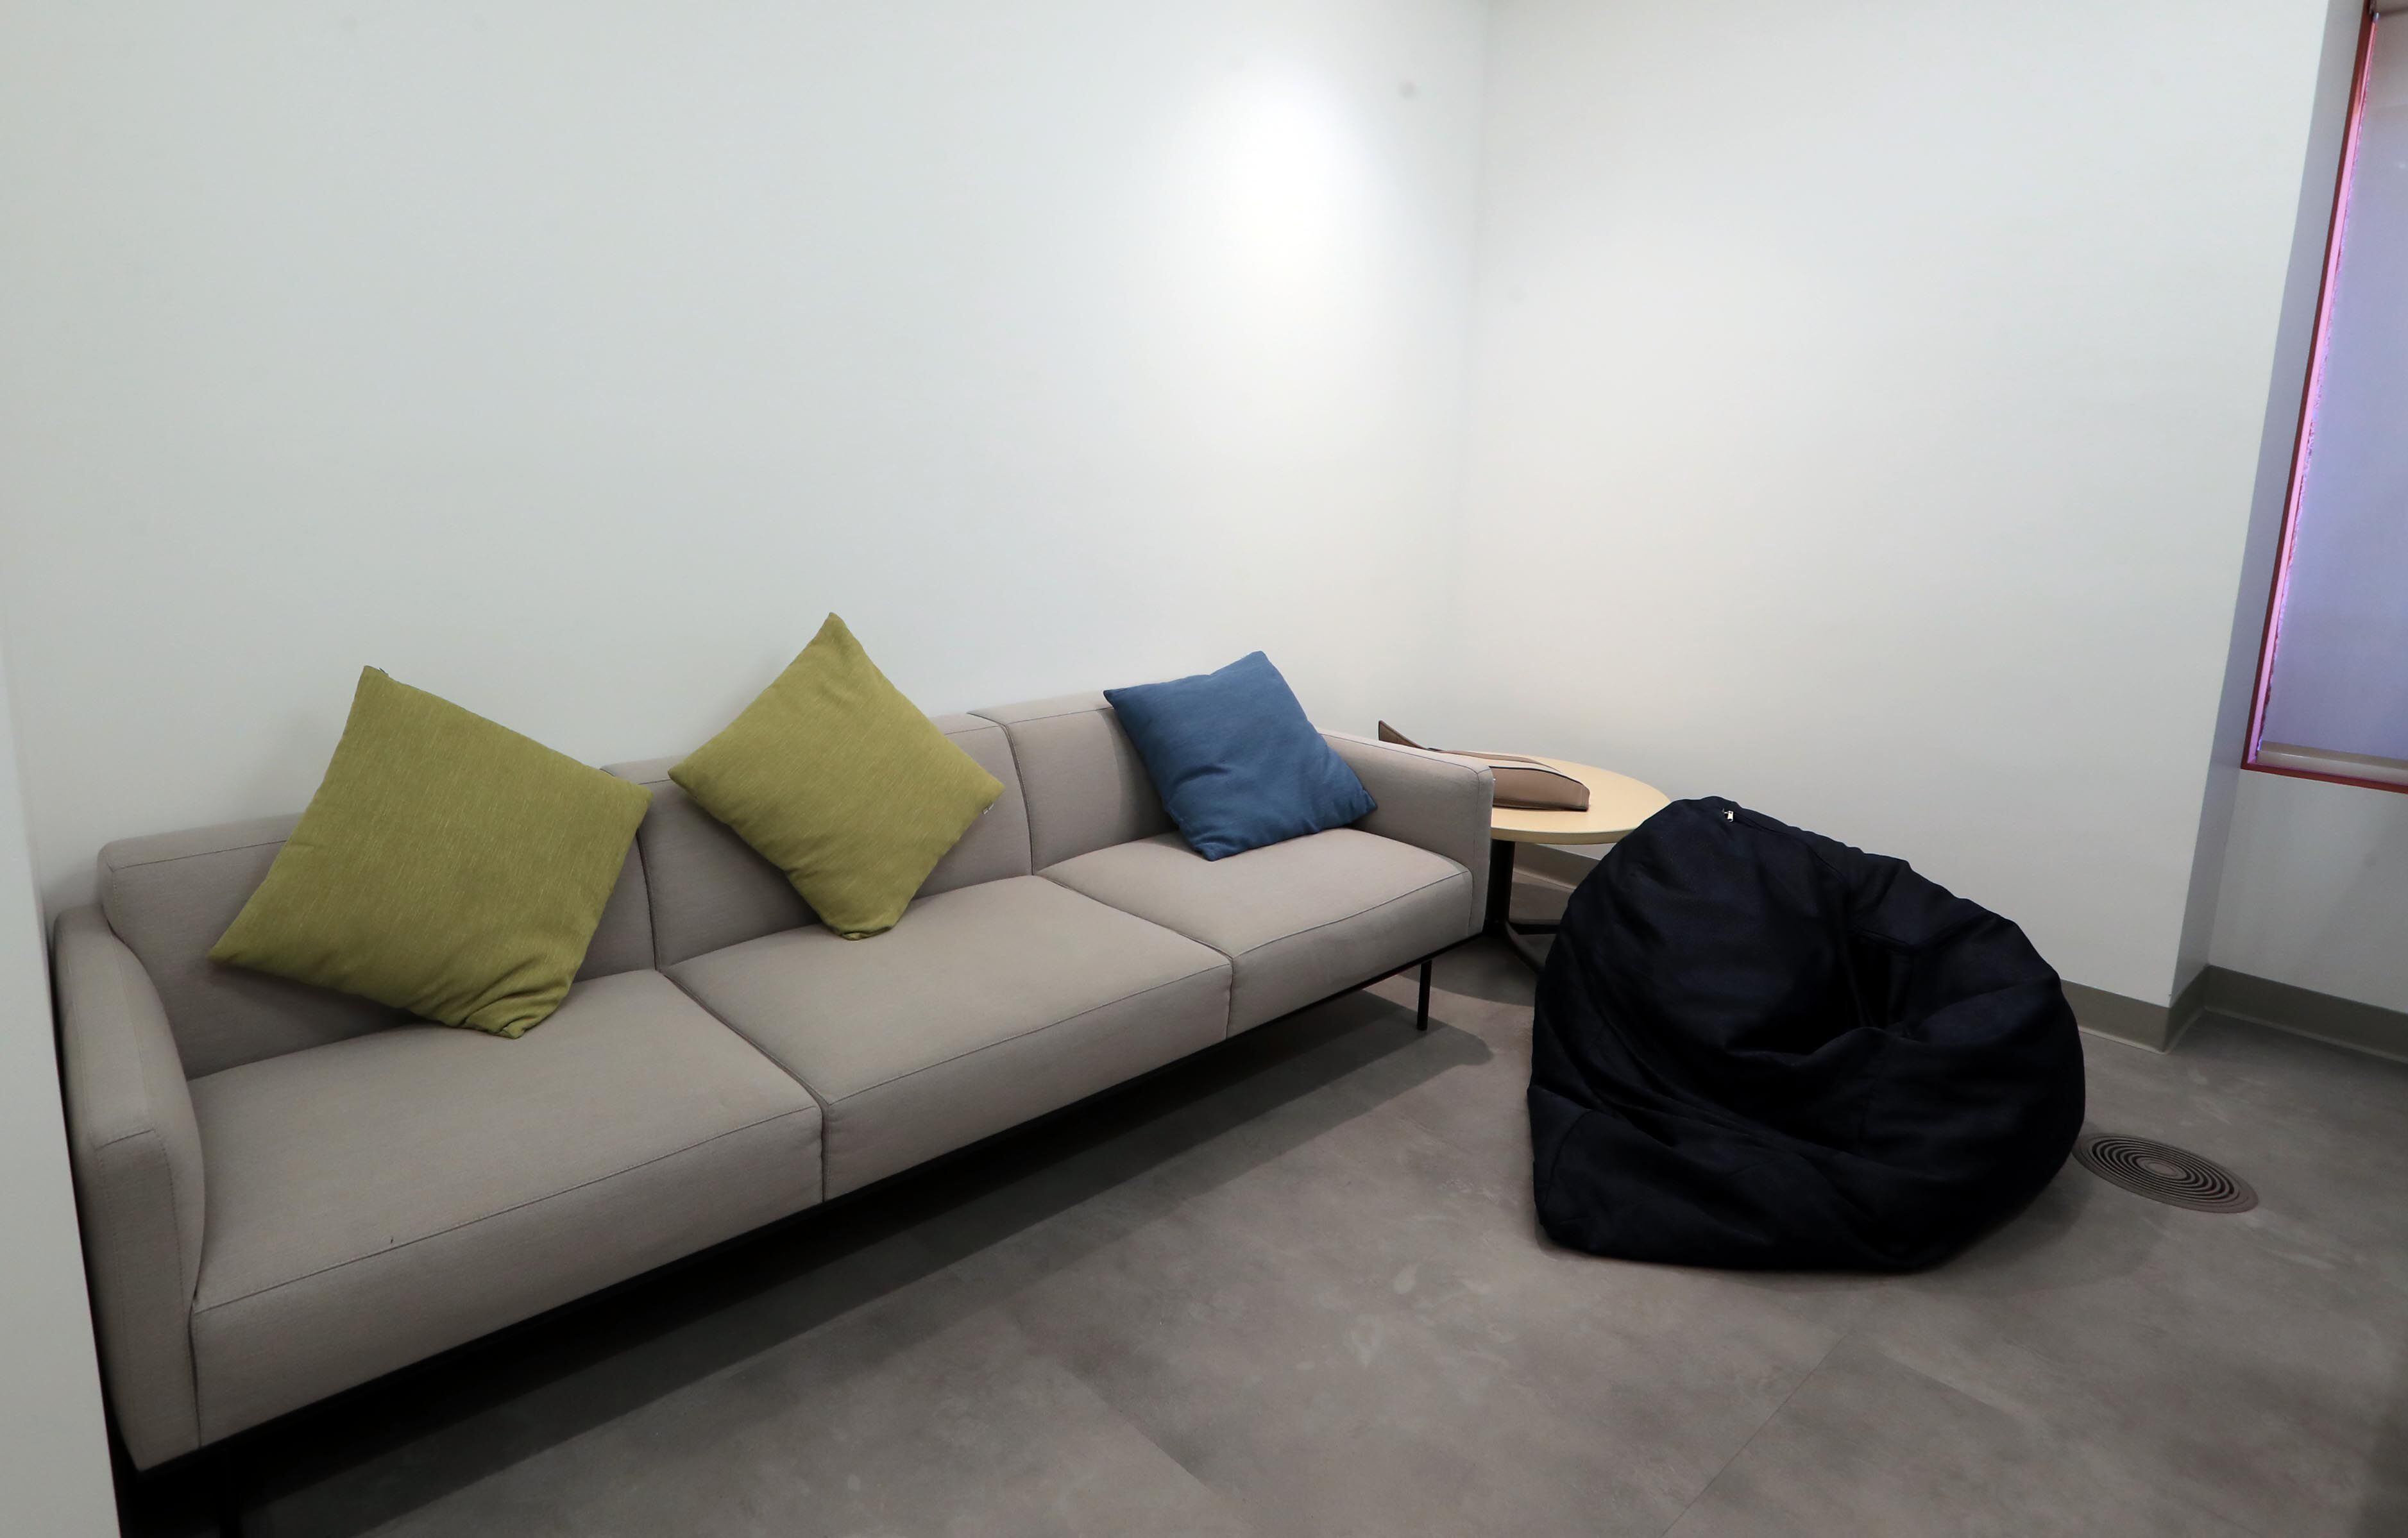 Sala de descanso (¿necesita una siesta?) y meditación en BAC en El Roble. (Foto Alonso Tenorio)